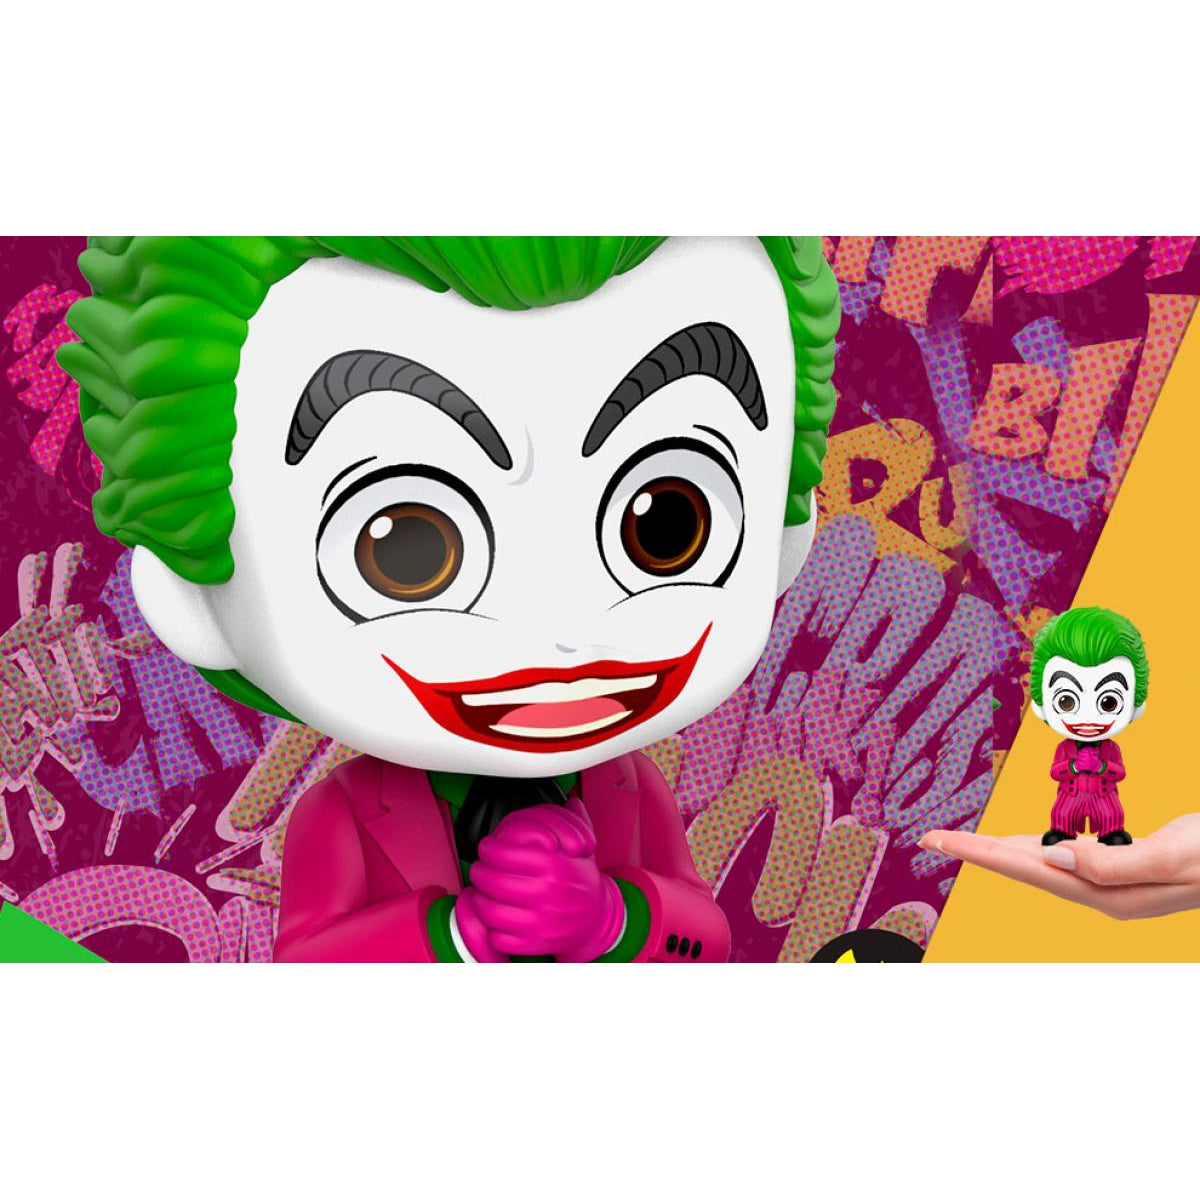 Joker 1960's Cosbaby